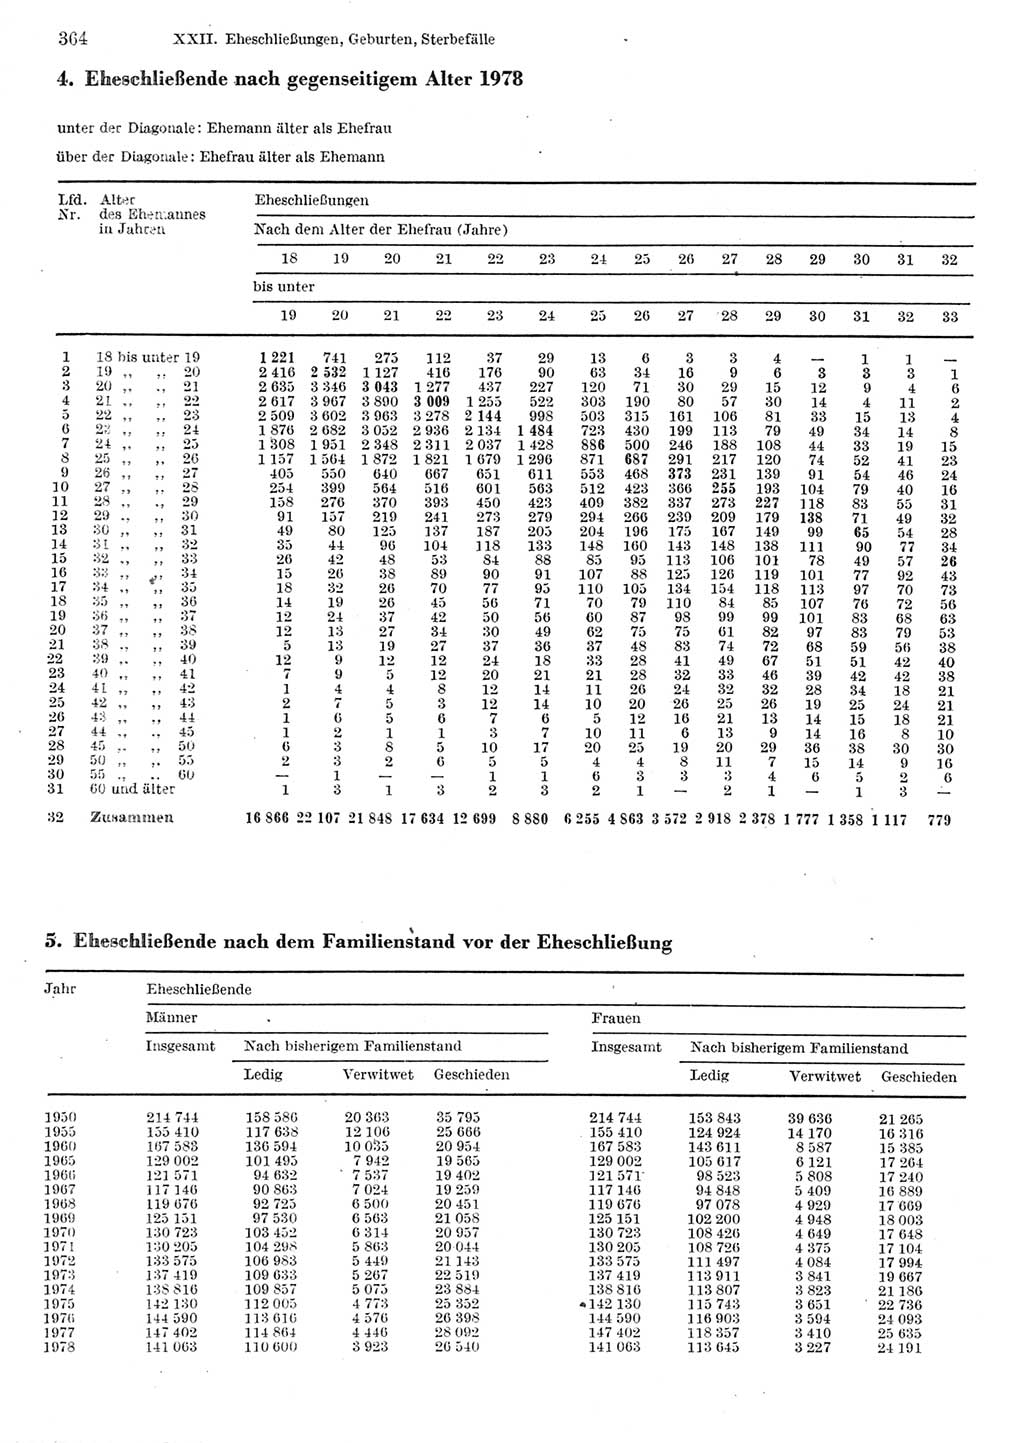 Statistisches Jahrbuch der Deutschen Demokratischen Republik (DDR) 1980, Seite 364 (Stat. Jb. DDR 1980, S. 364)